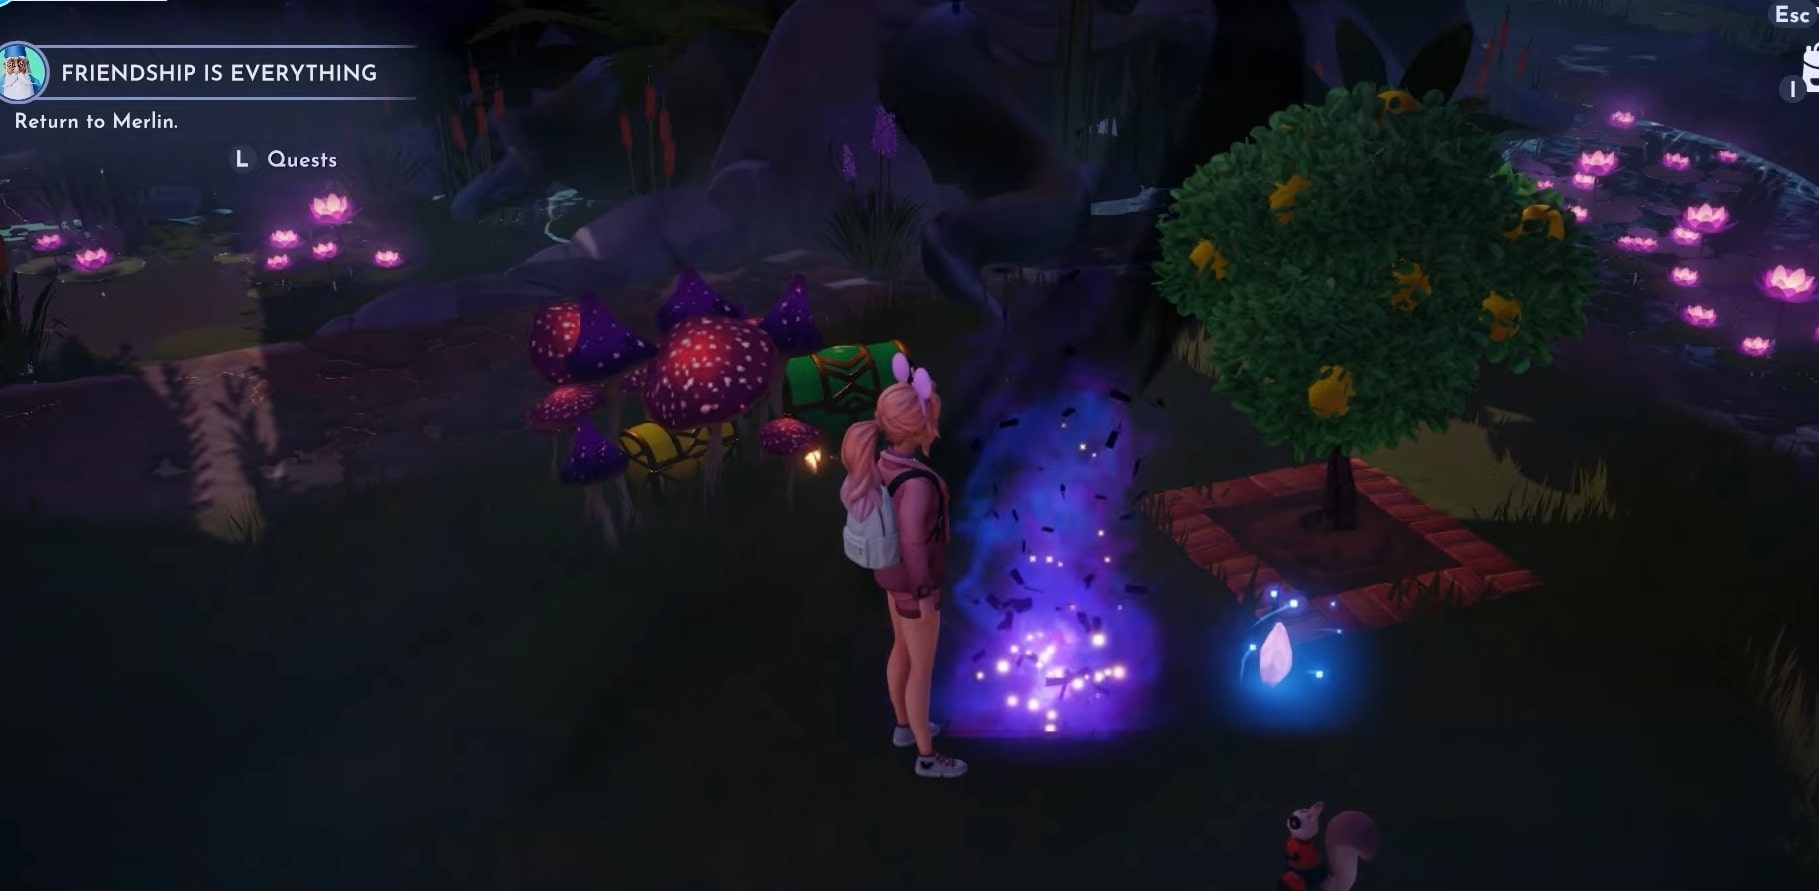 sogni difficili per Lost In The Dark Grove Quest nella Disney Dreamlight Valley